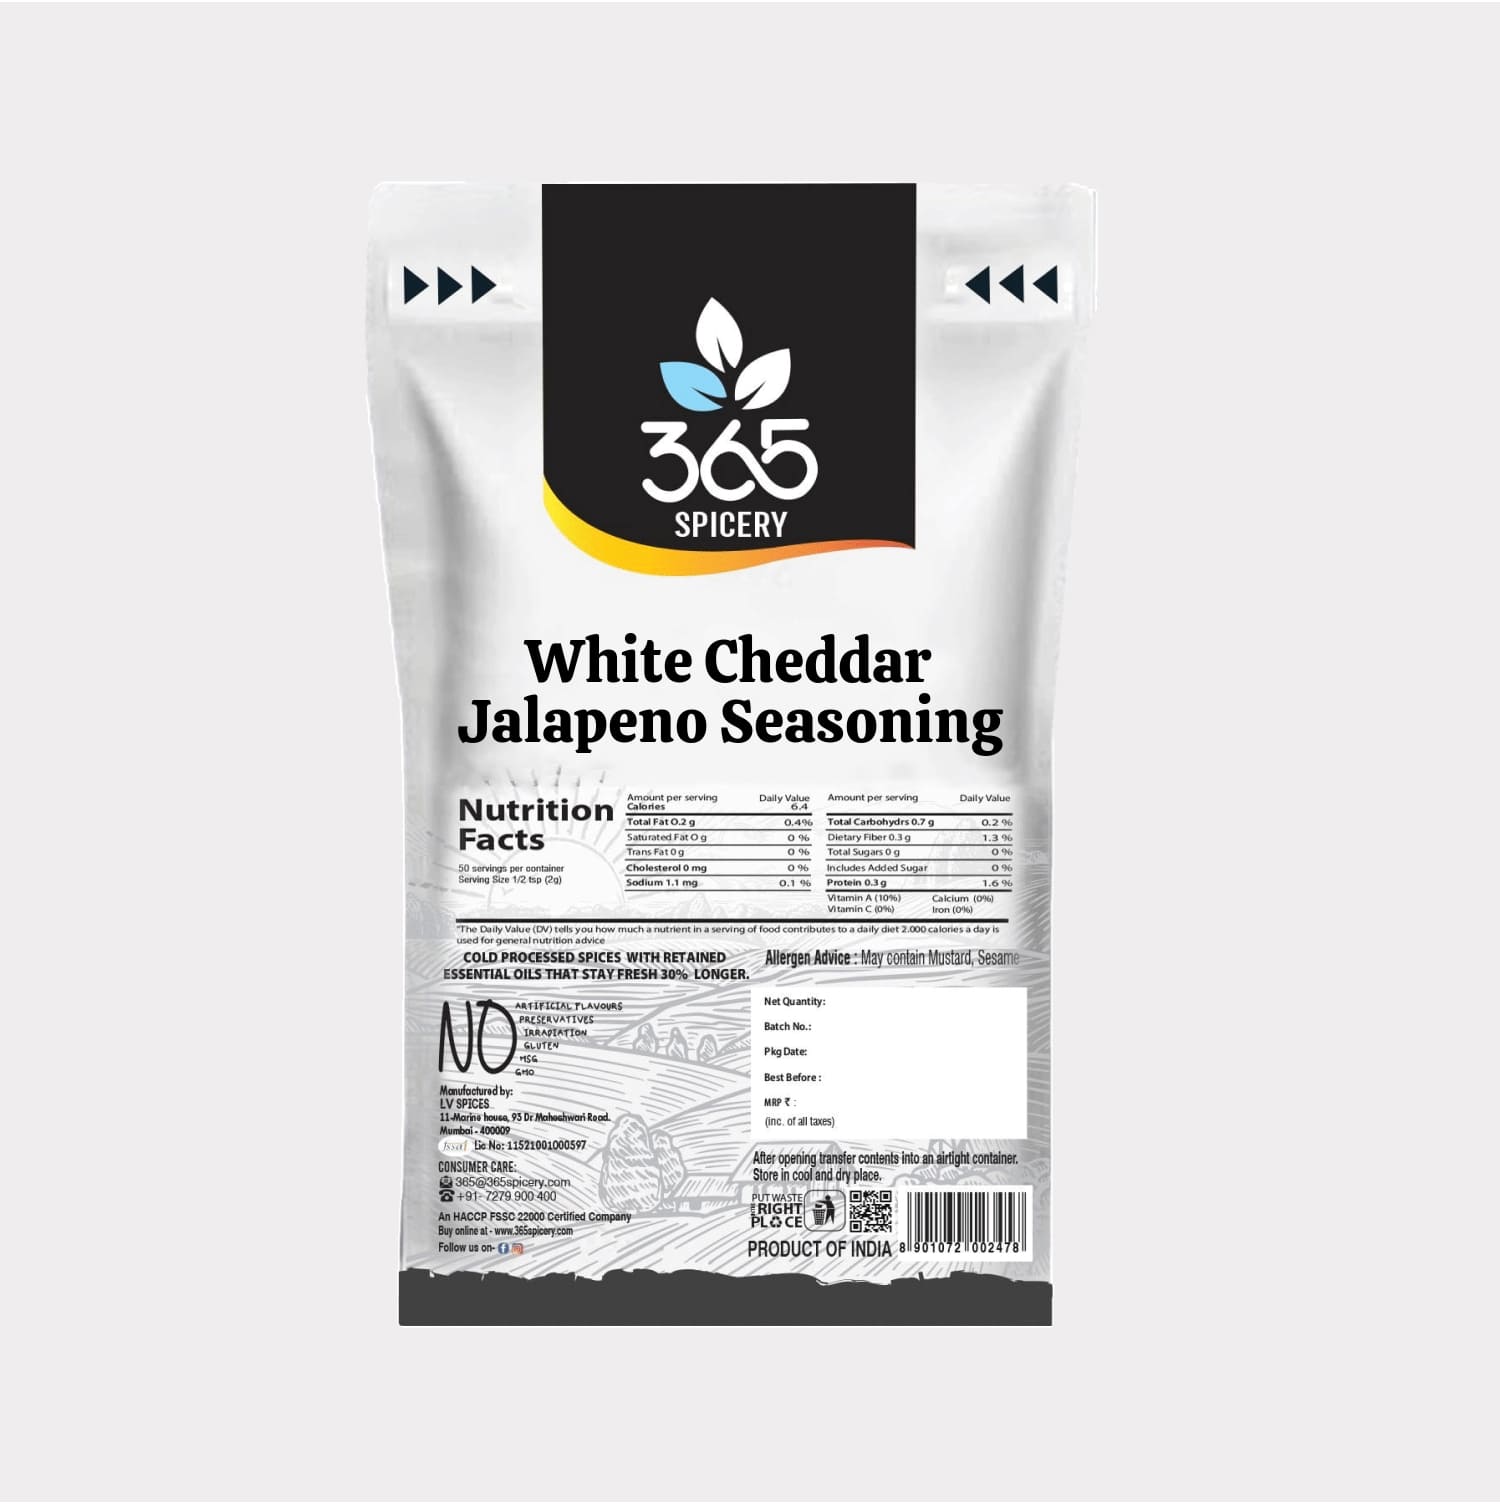 White Cheddar Jalapeno Seasoning